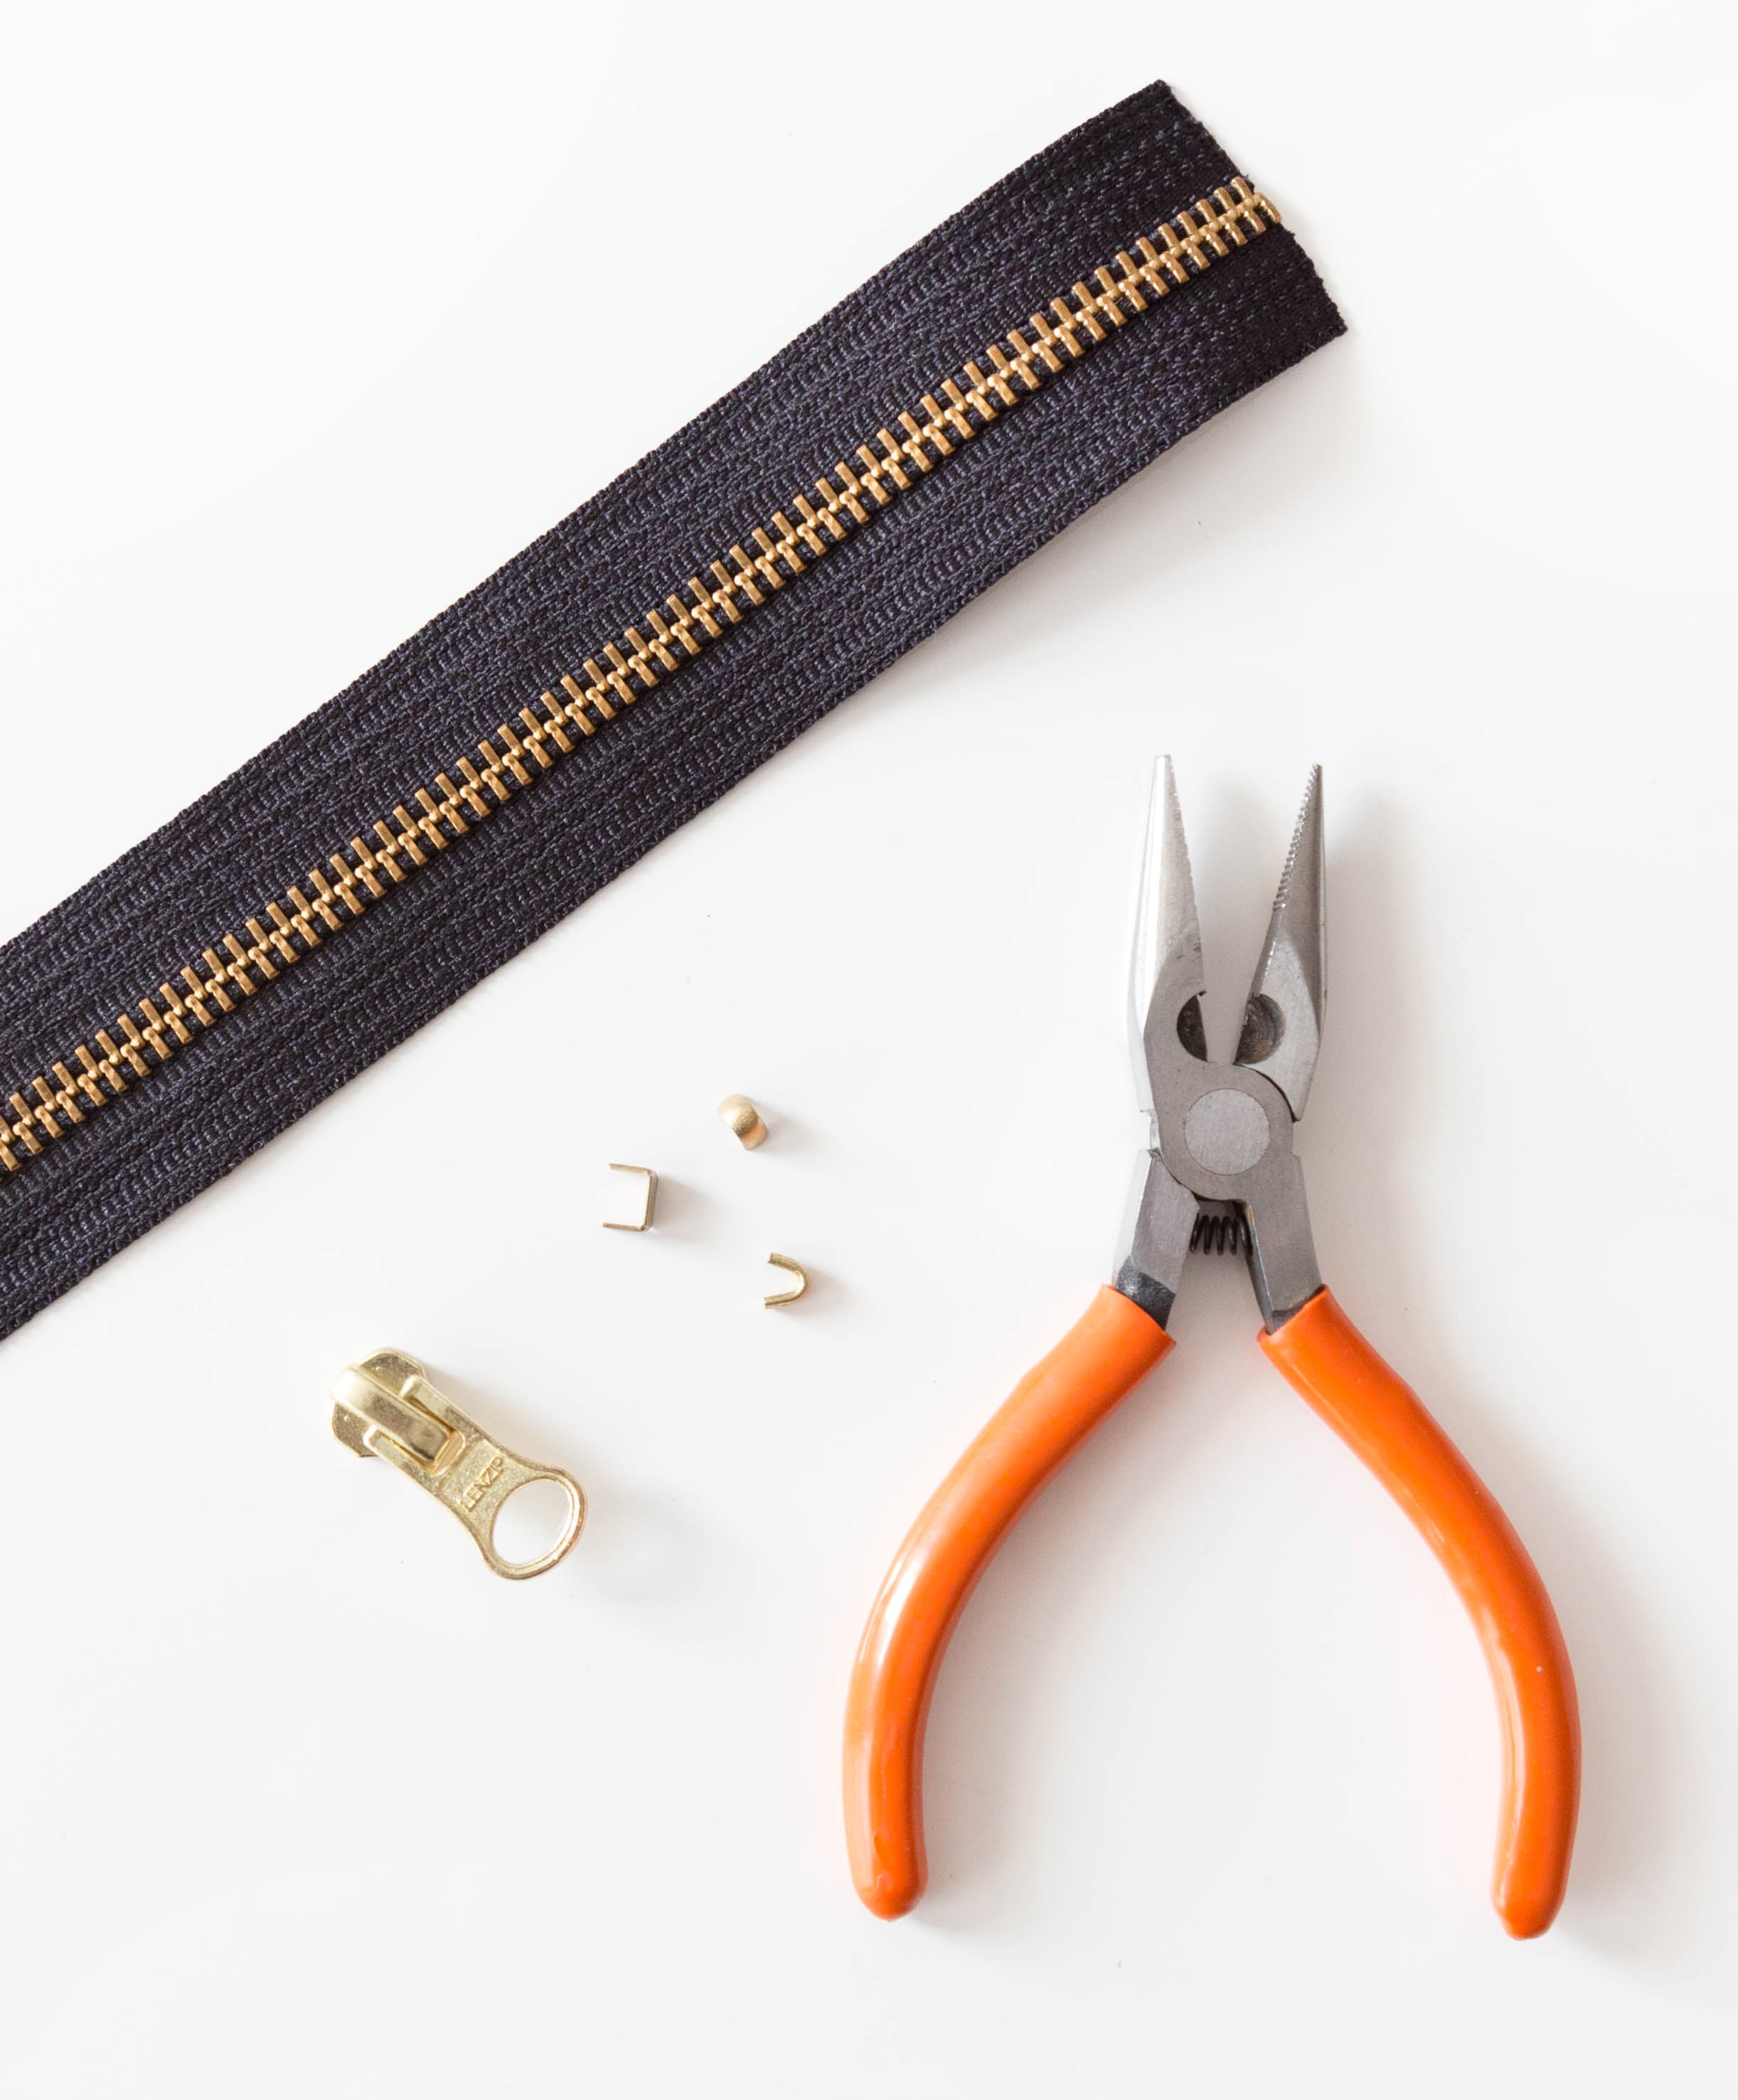 How to Make a Zipper | Grainline Studio